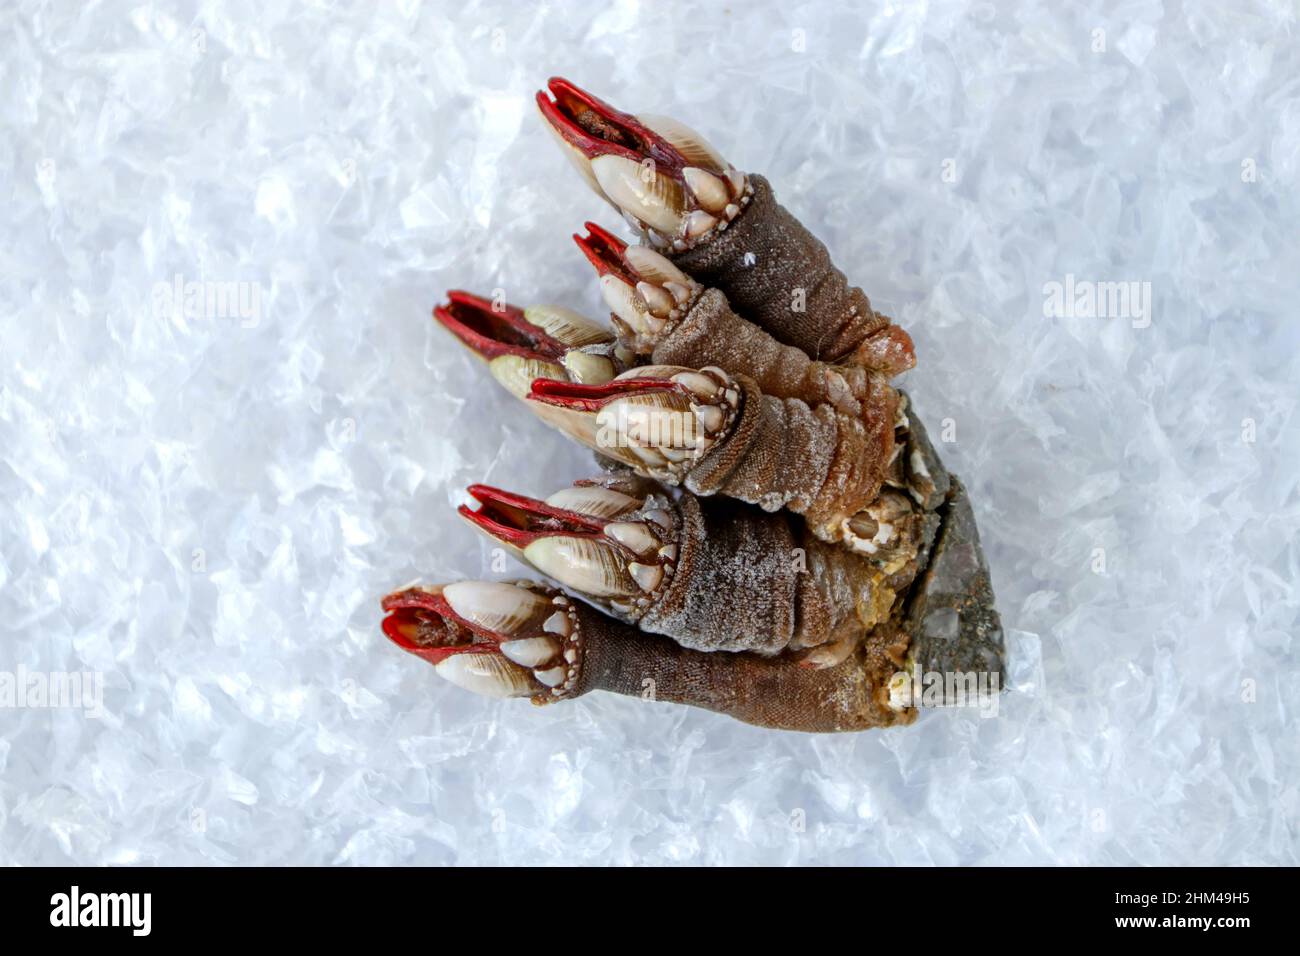 Percebes o manojo de pescado de barnacle de cuello de ganso en el pollcipes de ice.Pollcipes Foto de stock